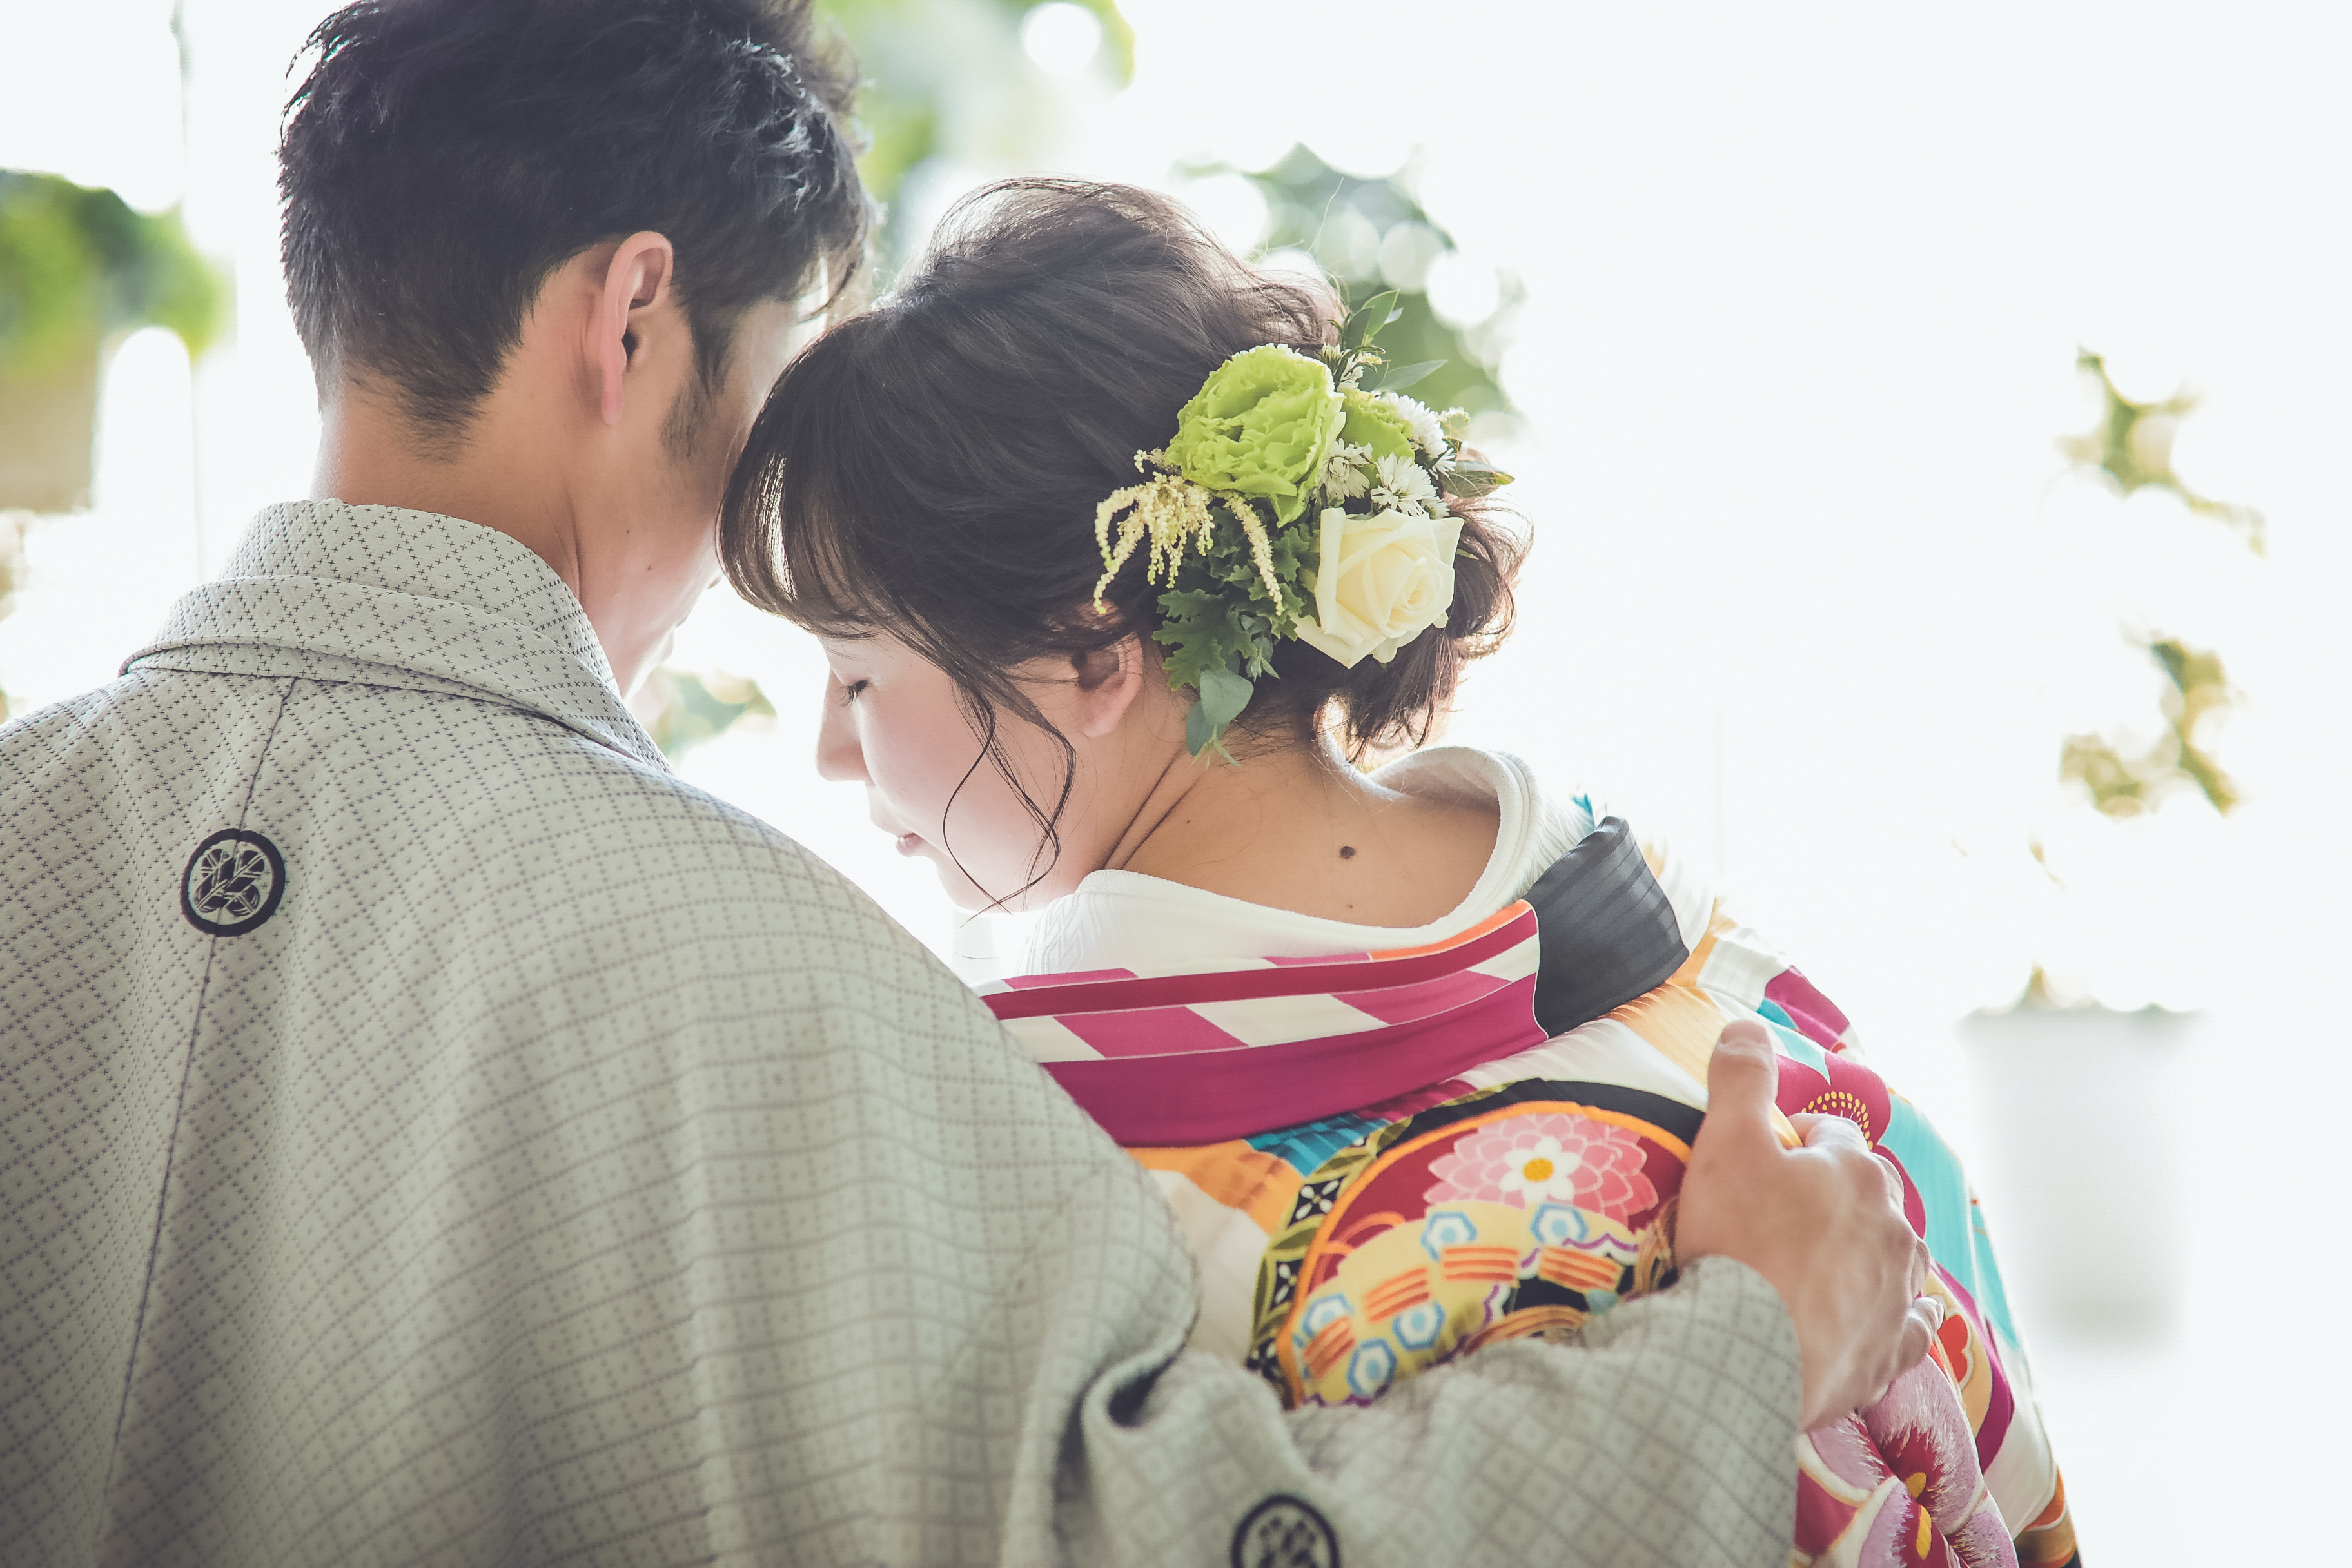 前撮りで和装を着る際にチェックしておきたい人気の髪型 結婚式写真 前撮り コマーシャルフォト ムービーなら神奈川県横浜市のインプルーブ